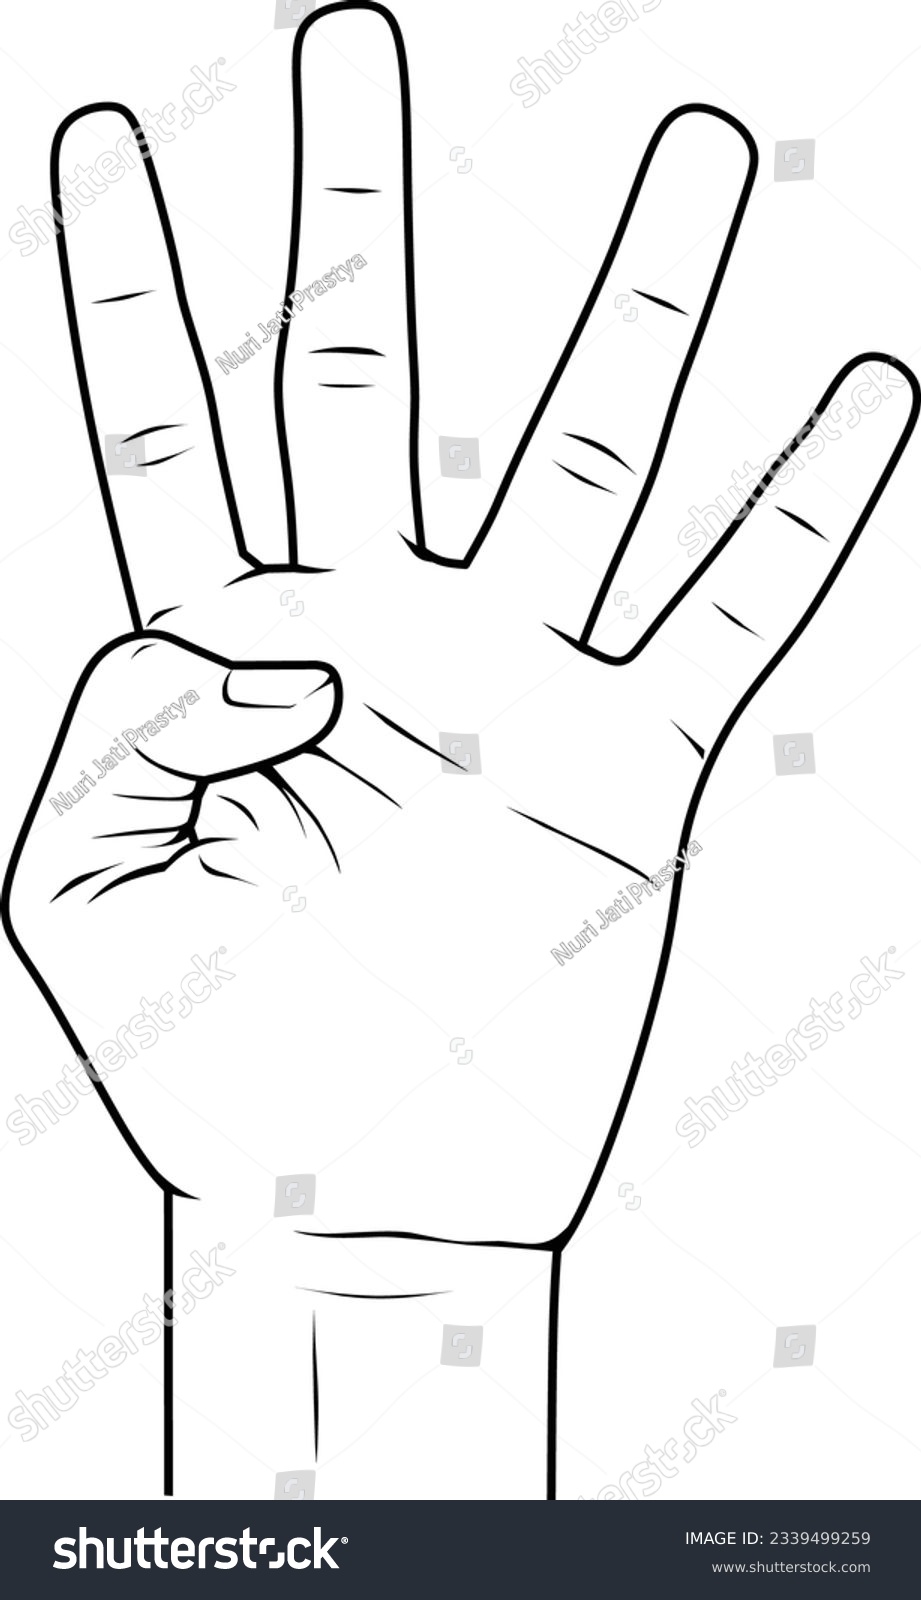 SVG of four finger sign for object illustration svg